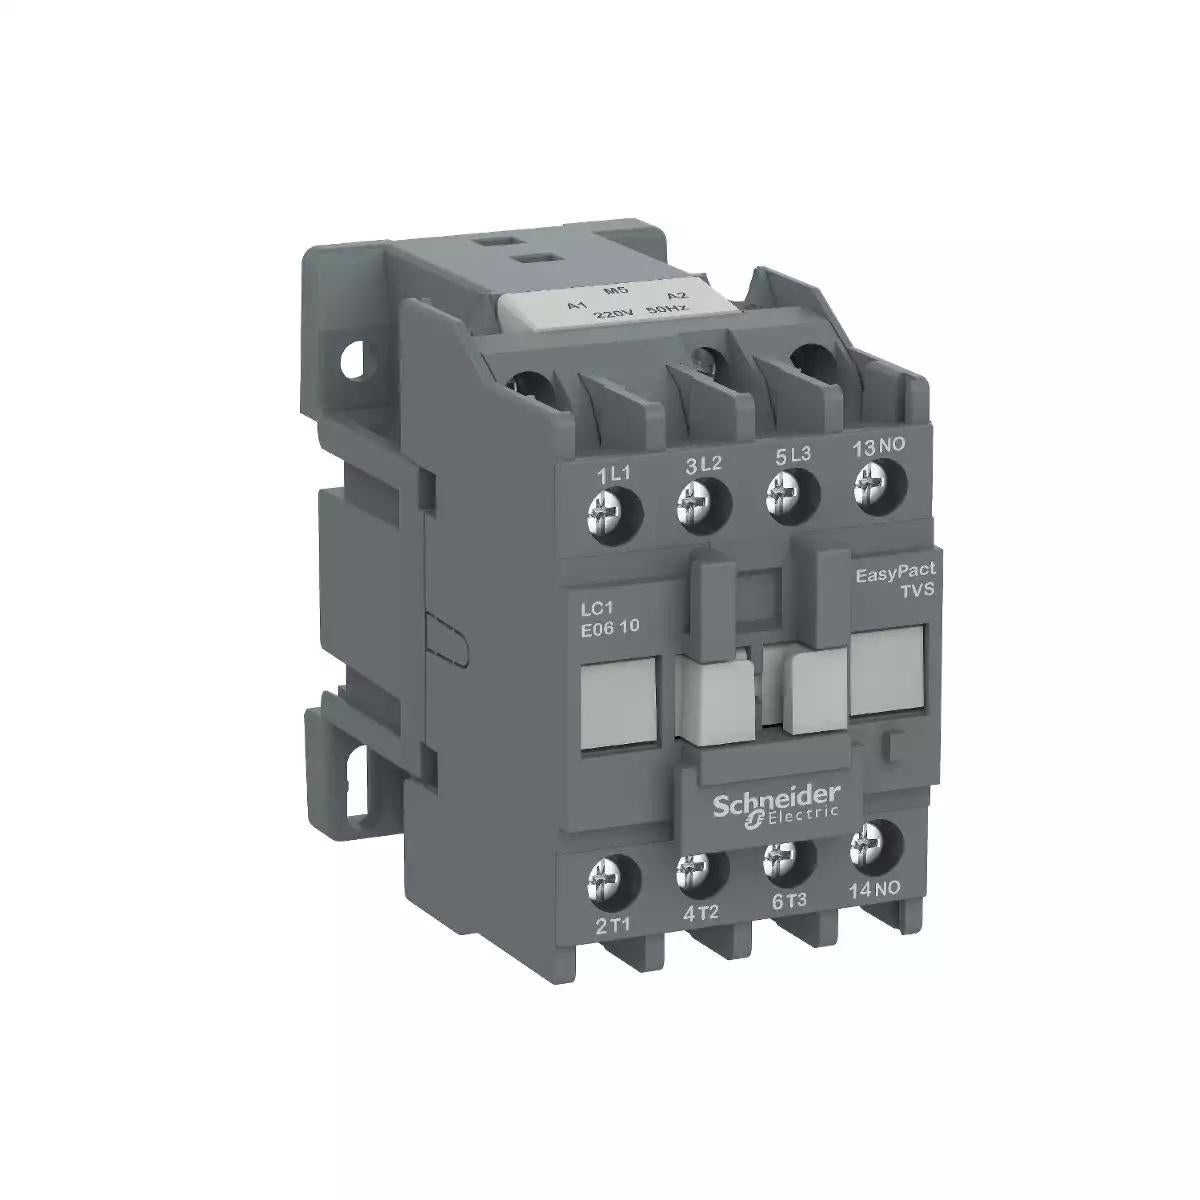 Schneider Electric EasyPact TVS contactor 3P(3 NO) - AC-3 - <= 440 V 12A - 380 V AC coil